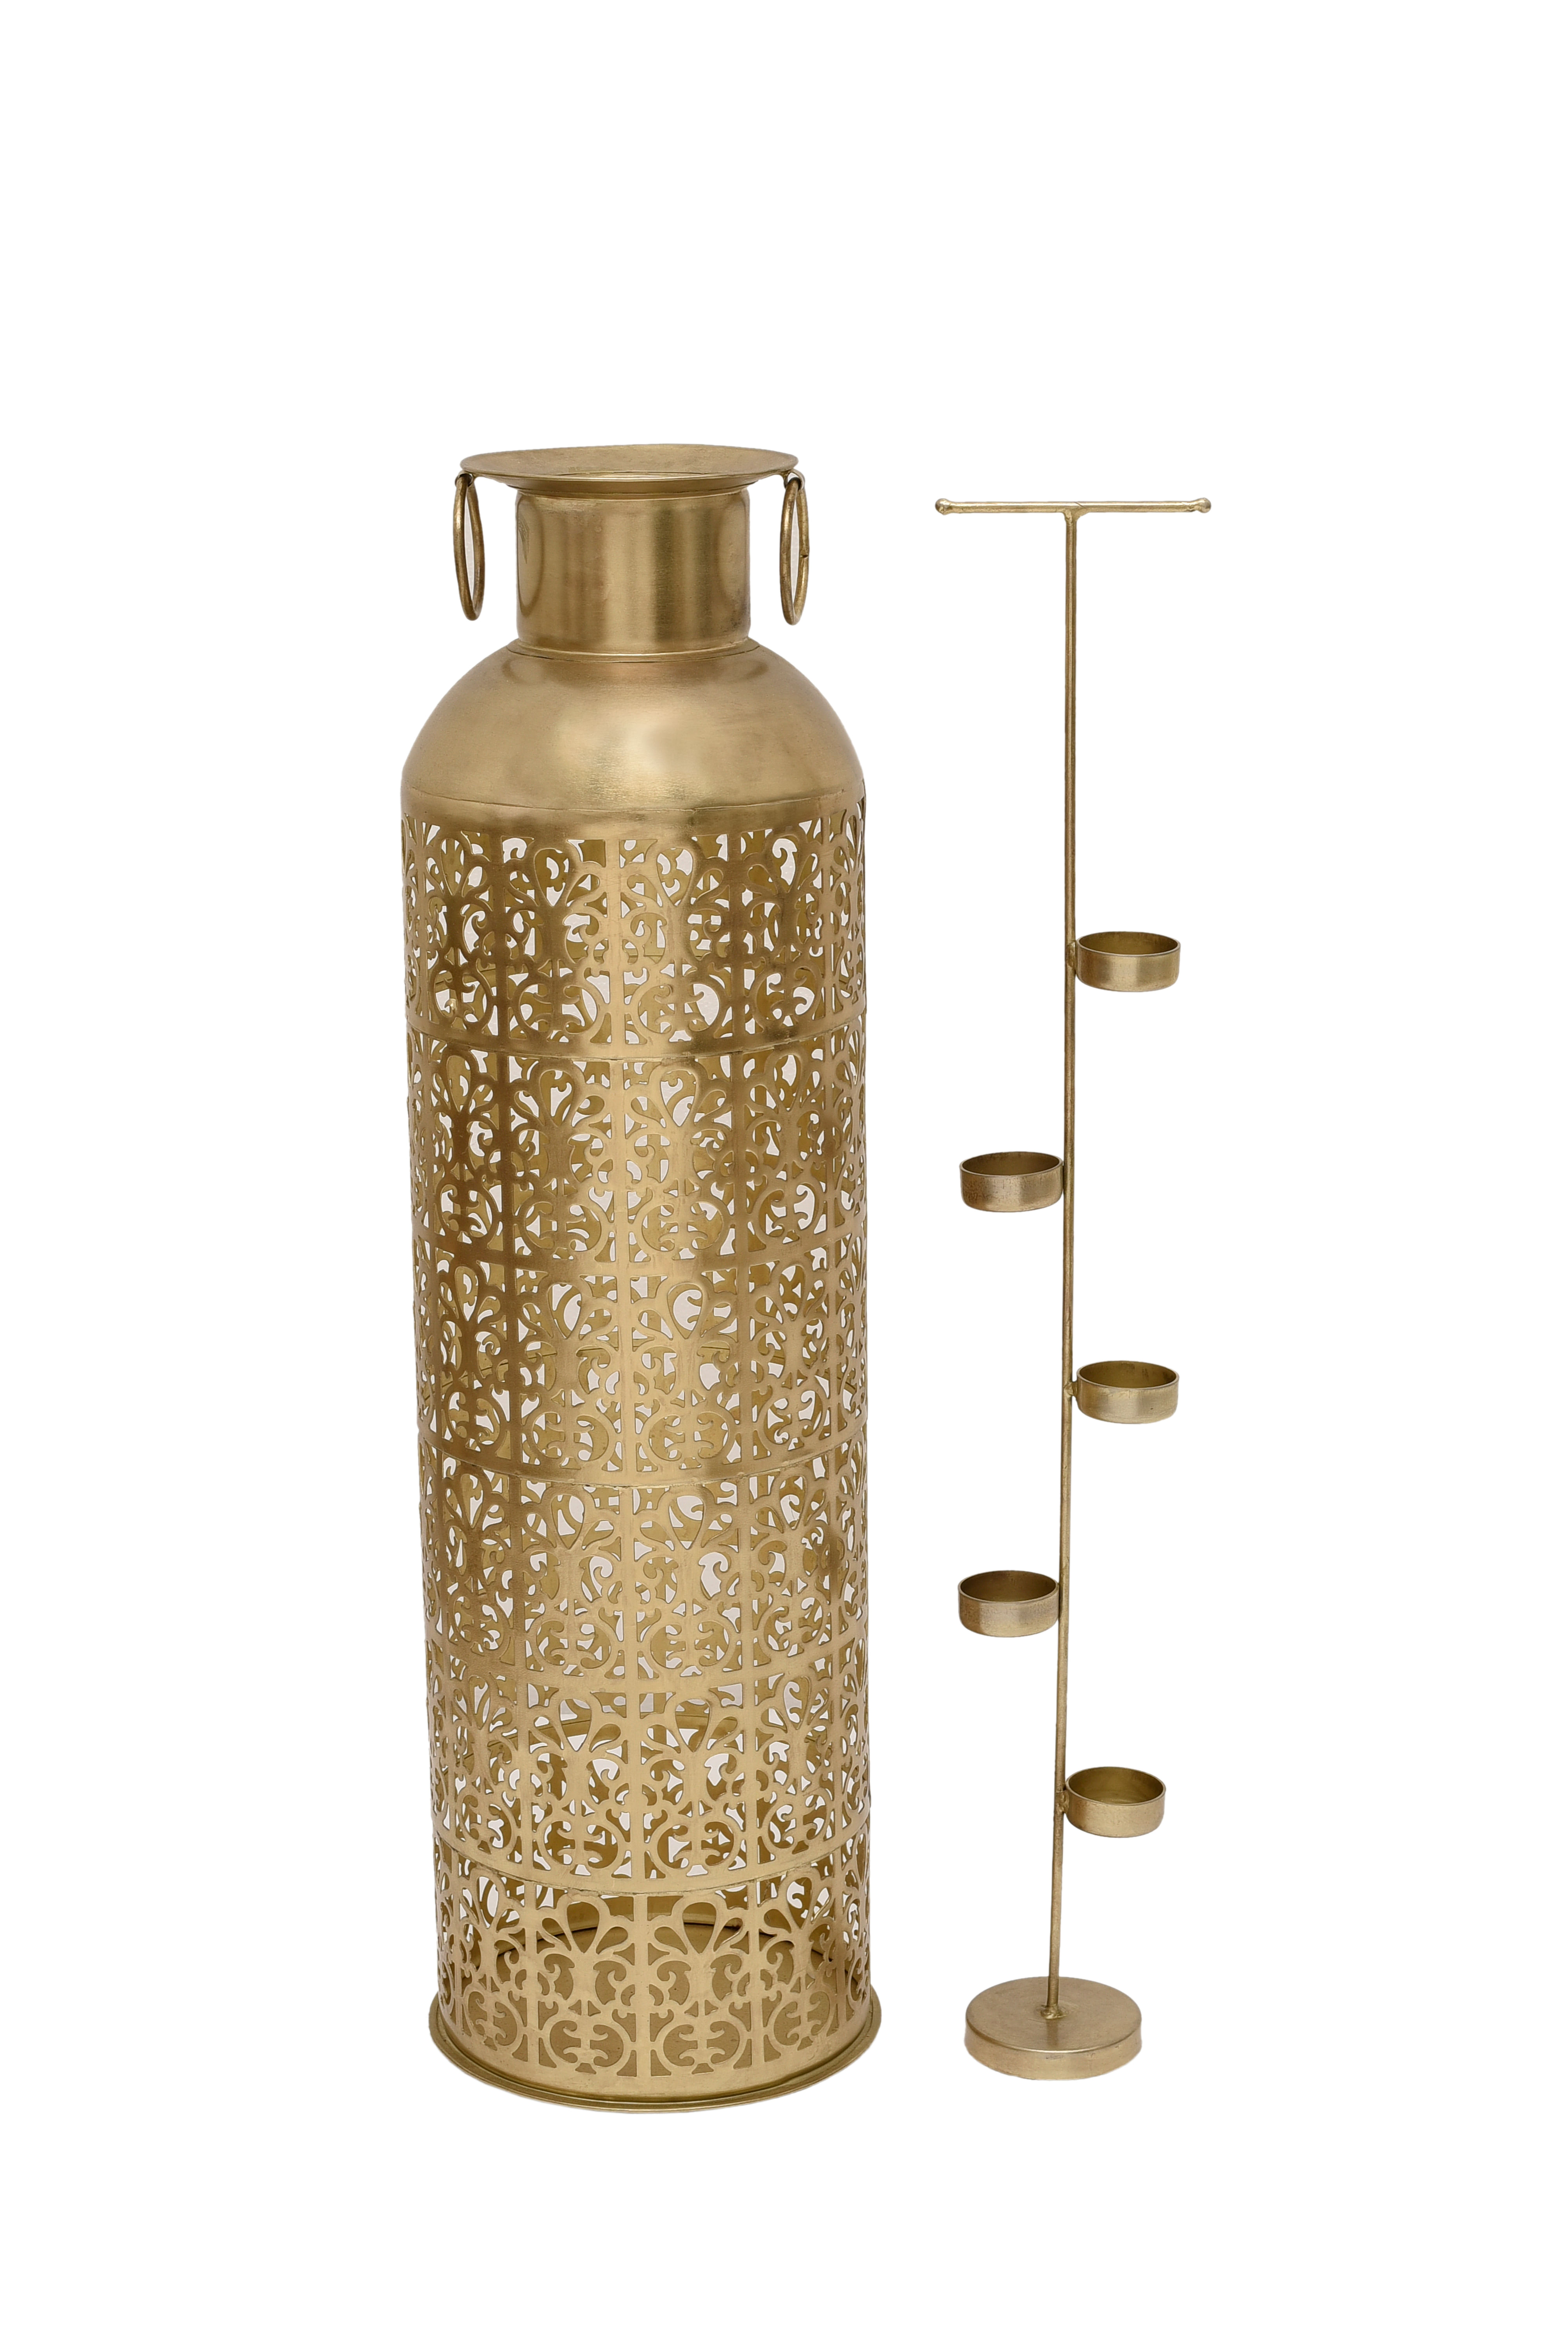 Tjori Iron Vase Cum Candle Holder in Gold Colour